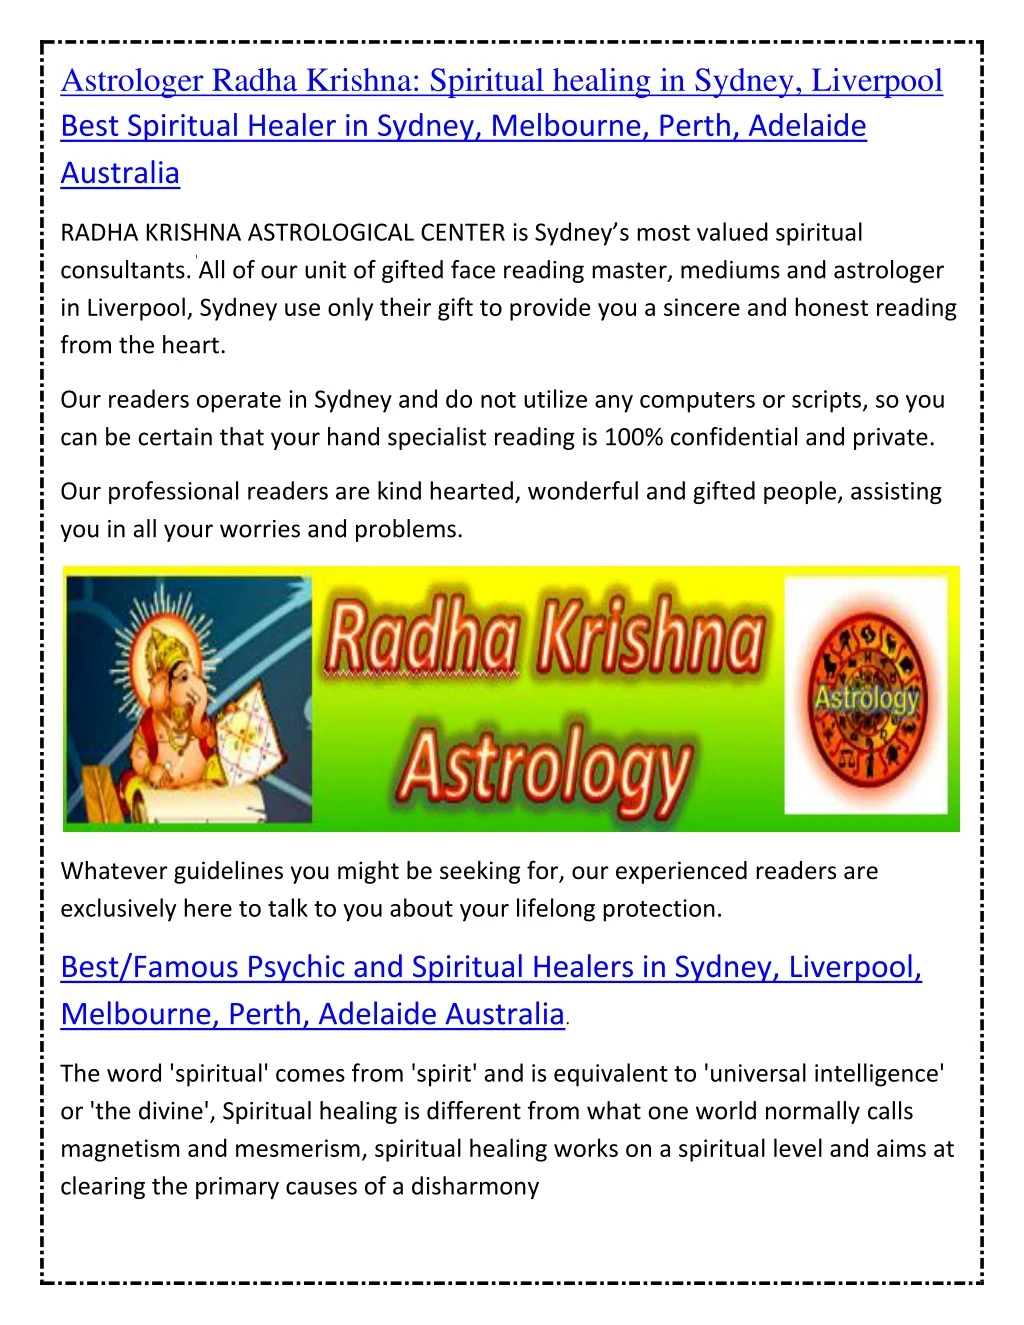 astrologer radha krishna spiritual healing